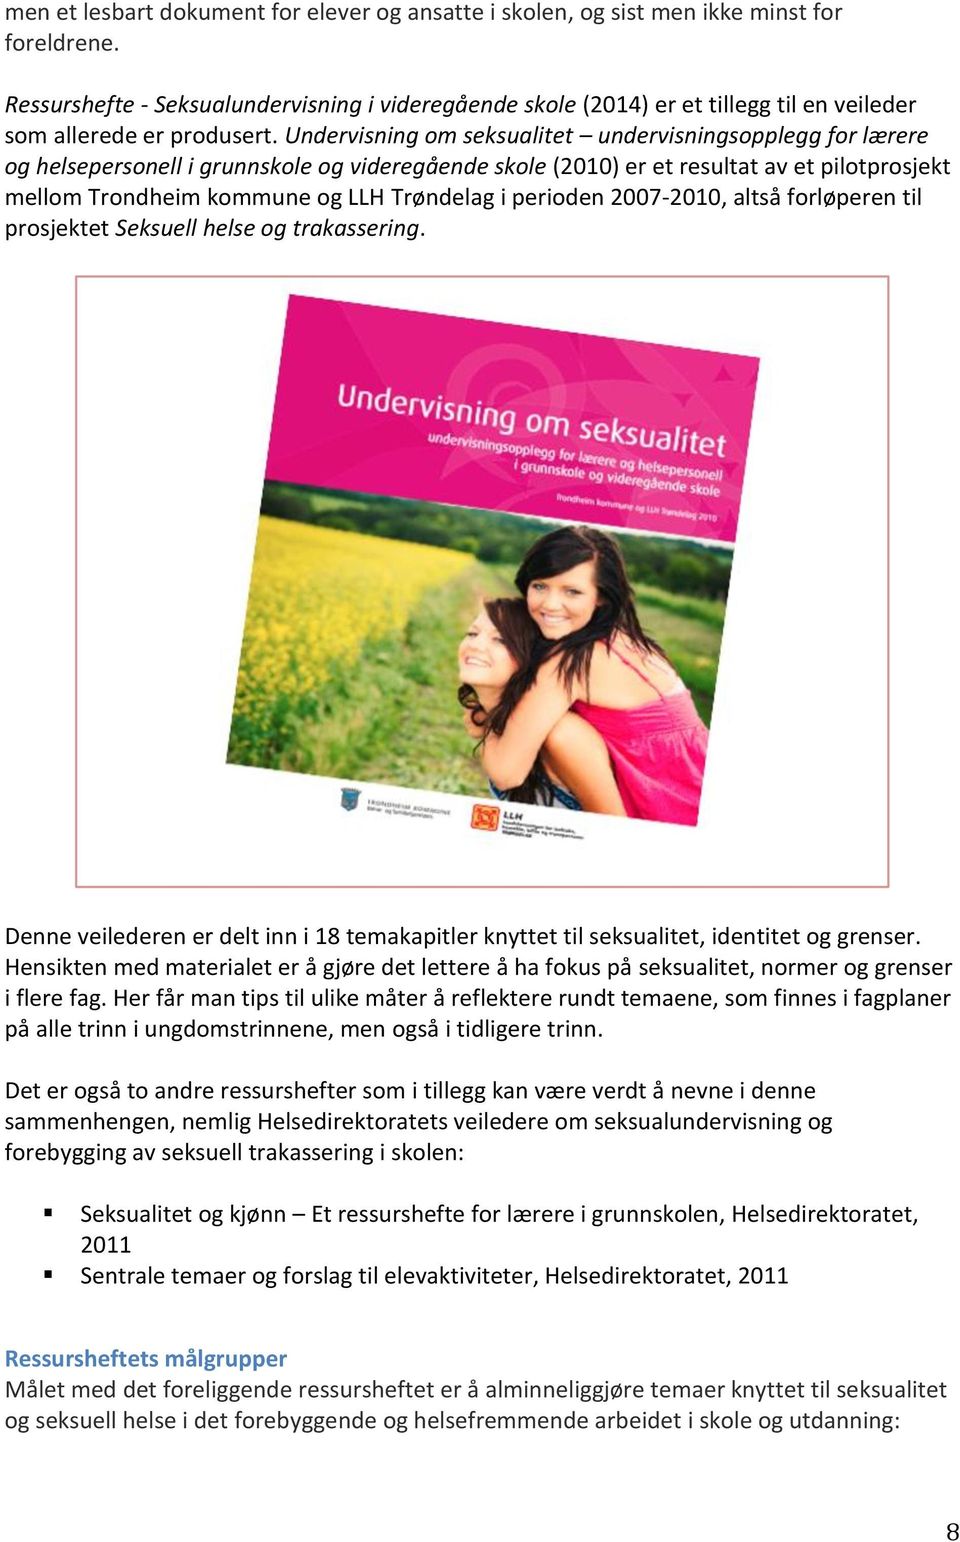 Undervisning om seksualitet undervisningsopplegg for lærere og helsepersonell i grunnskole og videregående skole (2010) er et resultat av et pilotprosjekt mellom Trondheim kommune og LLH Trøndelag i